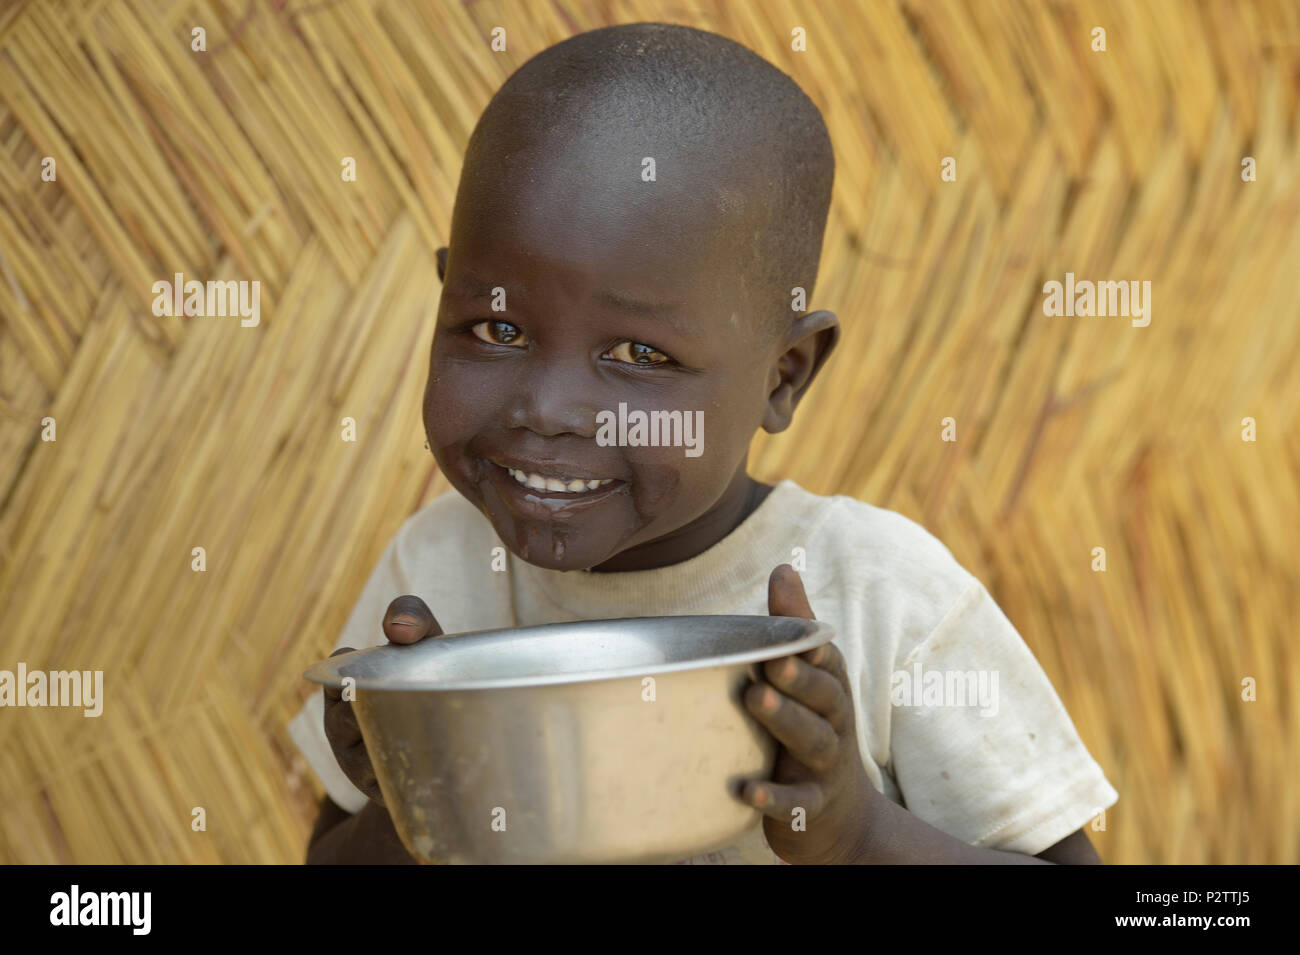 Ein Kind genießt sicheres Wasser in Malek Miir, einem Dorf im Süden des Sudan Lol, in dem eine anhaltende Dürre zerstört Pflanzen und linken Menschen hungrig. Stockfoto